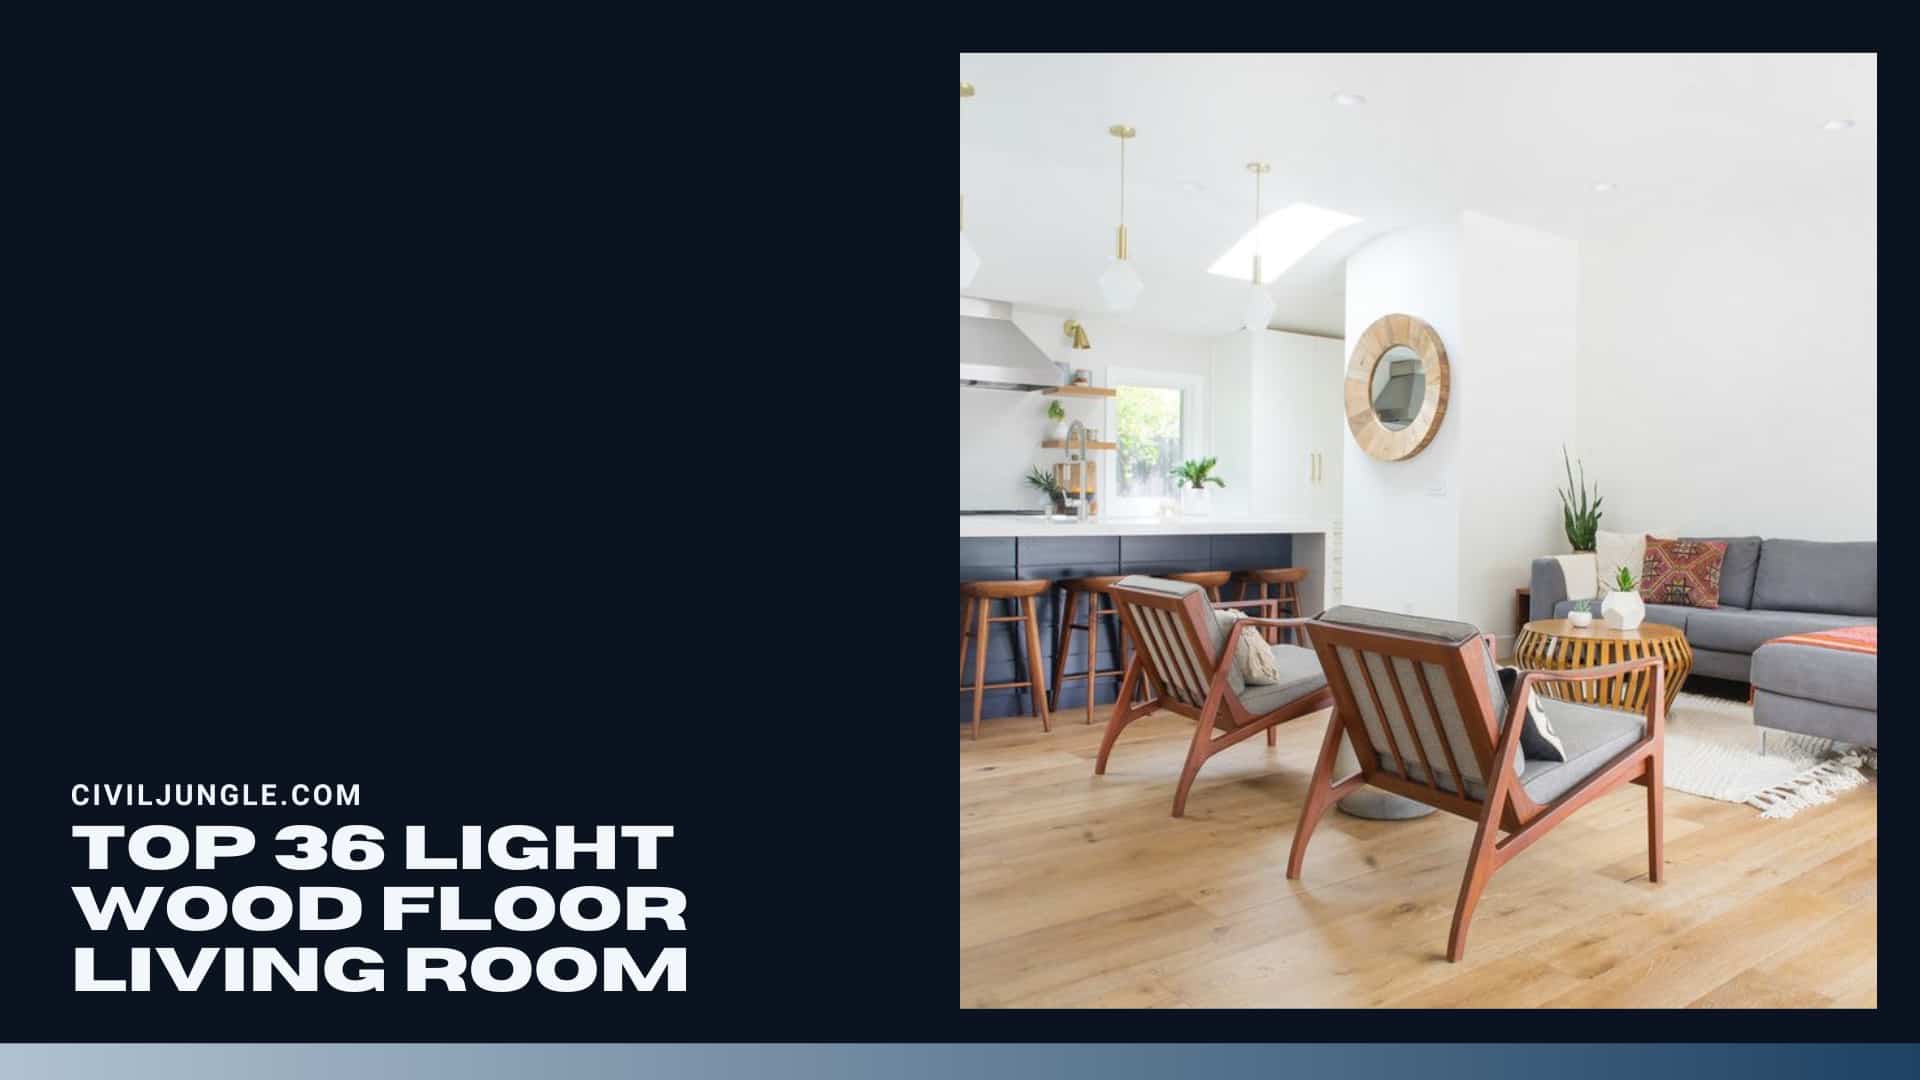 Top 36 Light Wood Floor Living Room